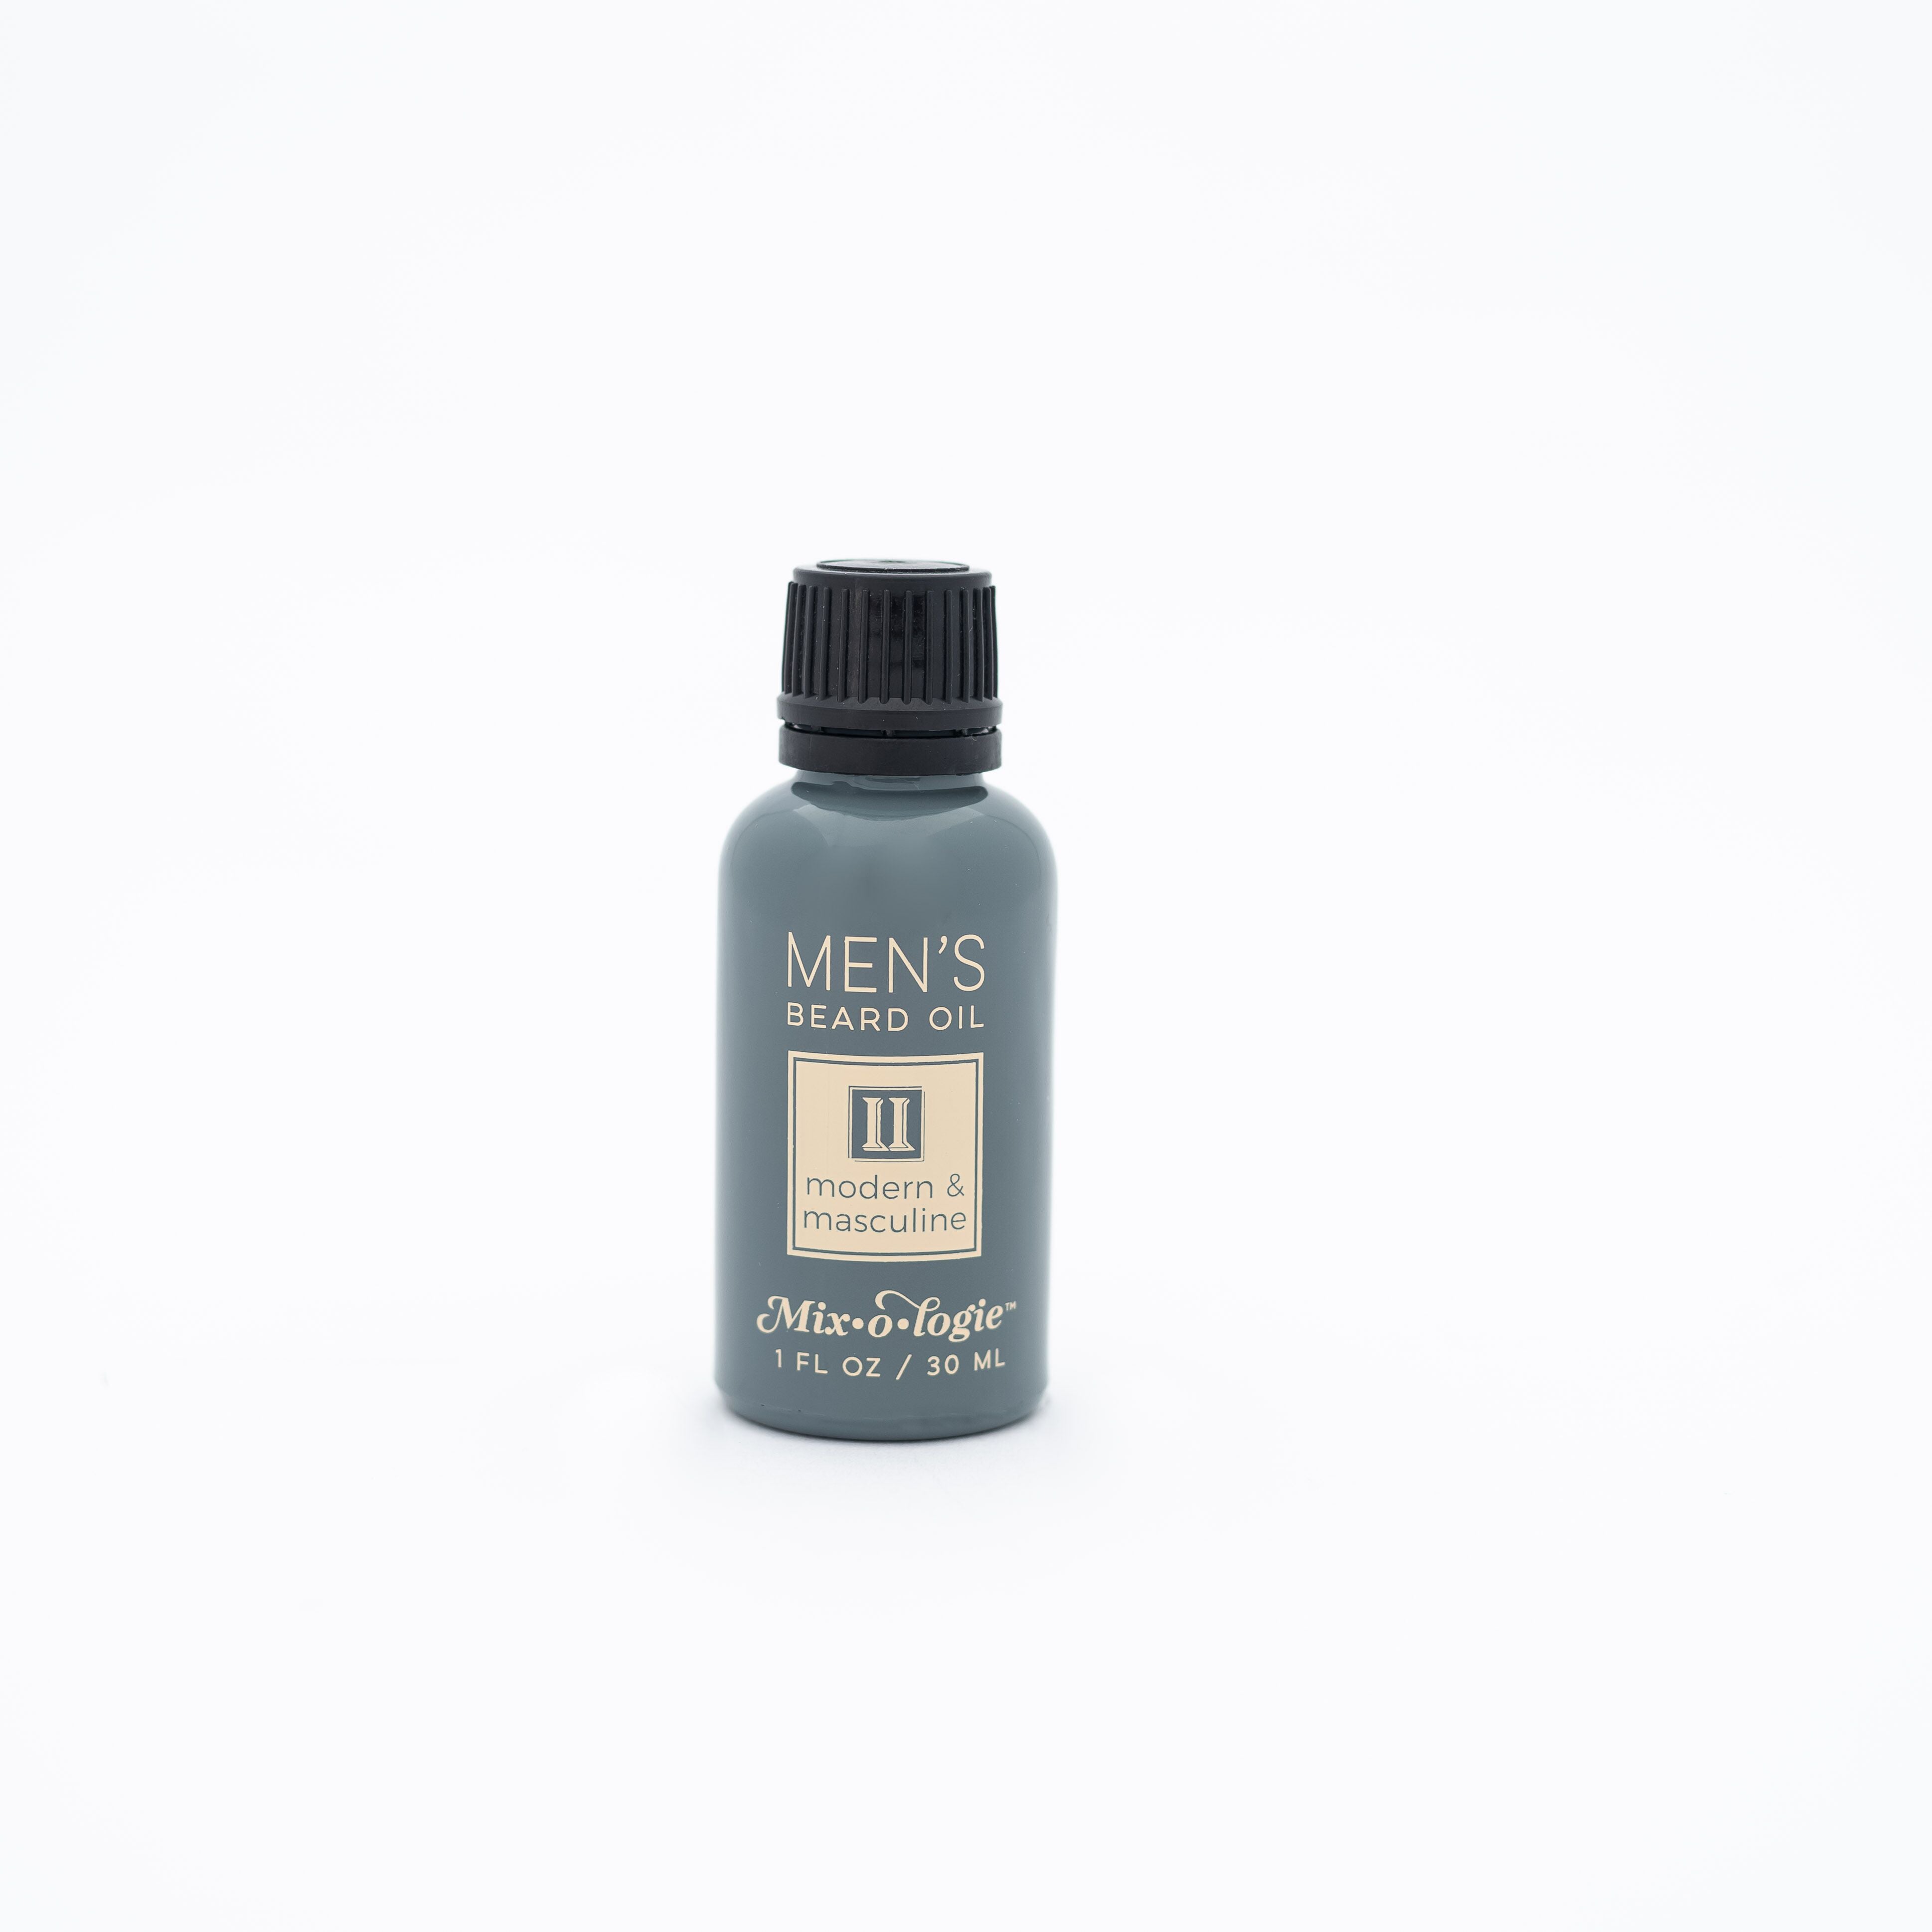 MEN-II Beard Oil (Modern & Masculine)